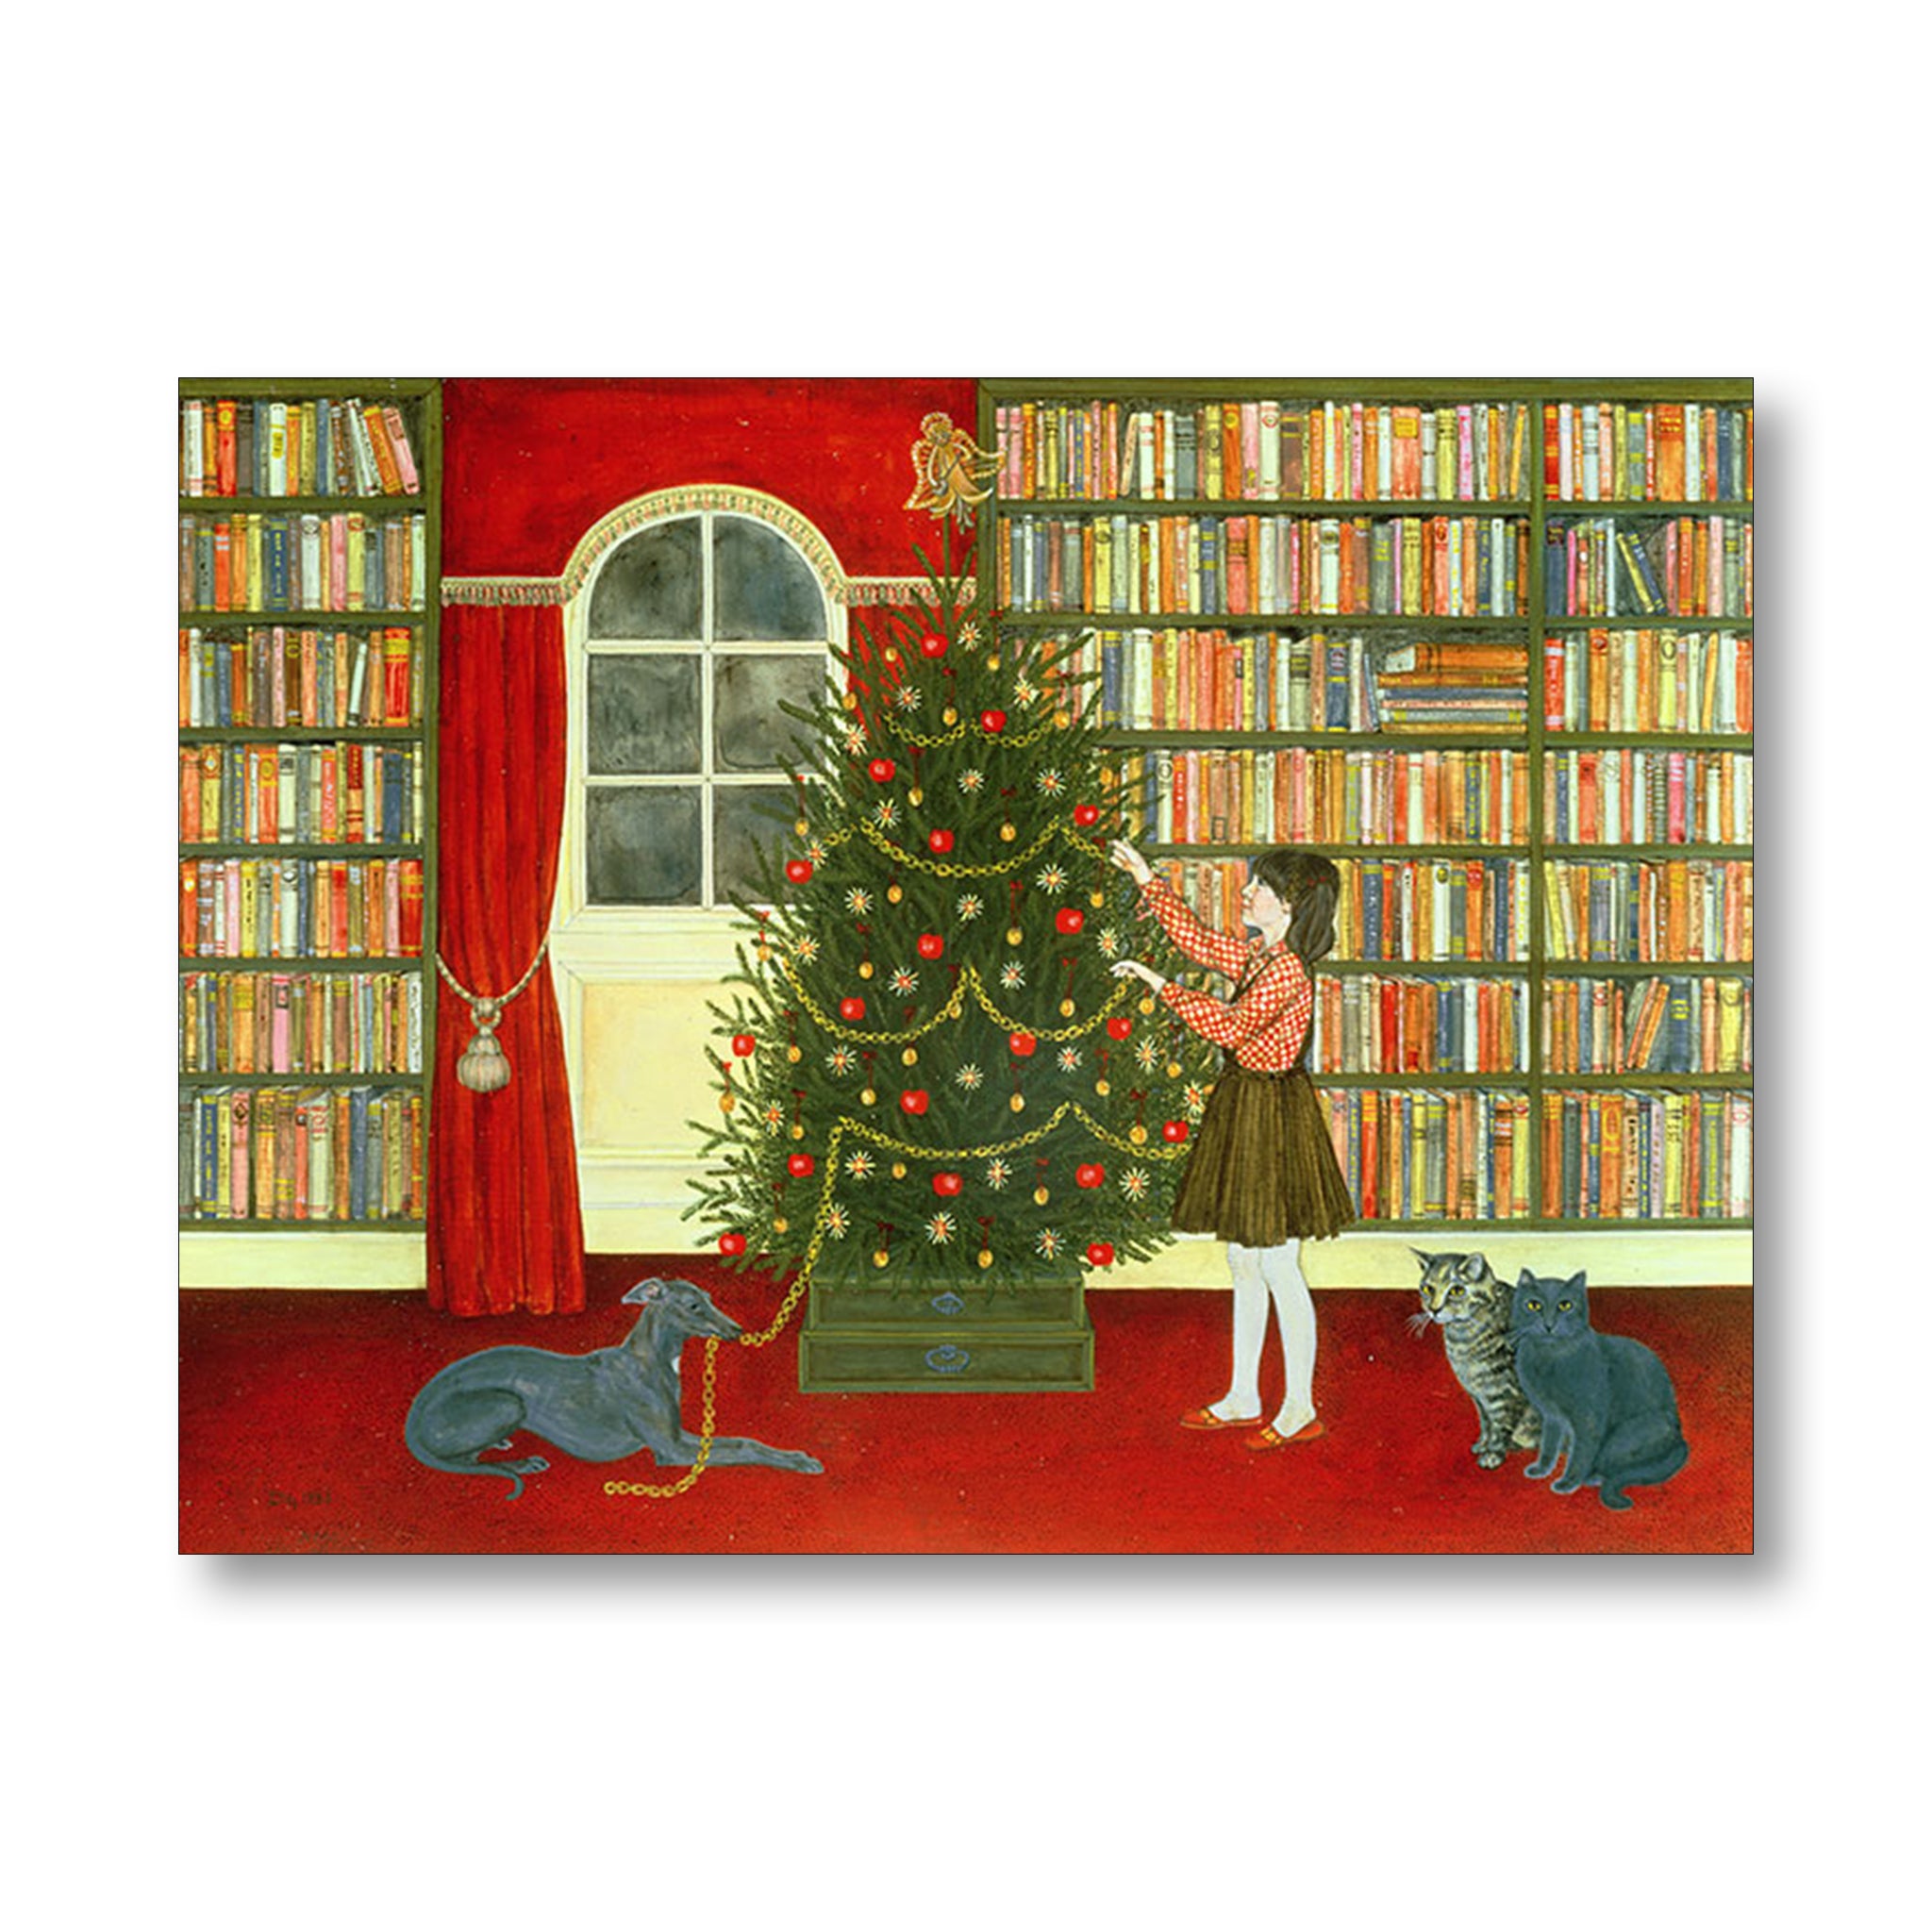 Christmas Card of girl decorating Christmas tree